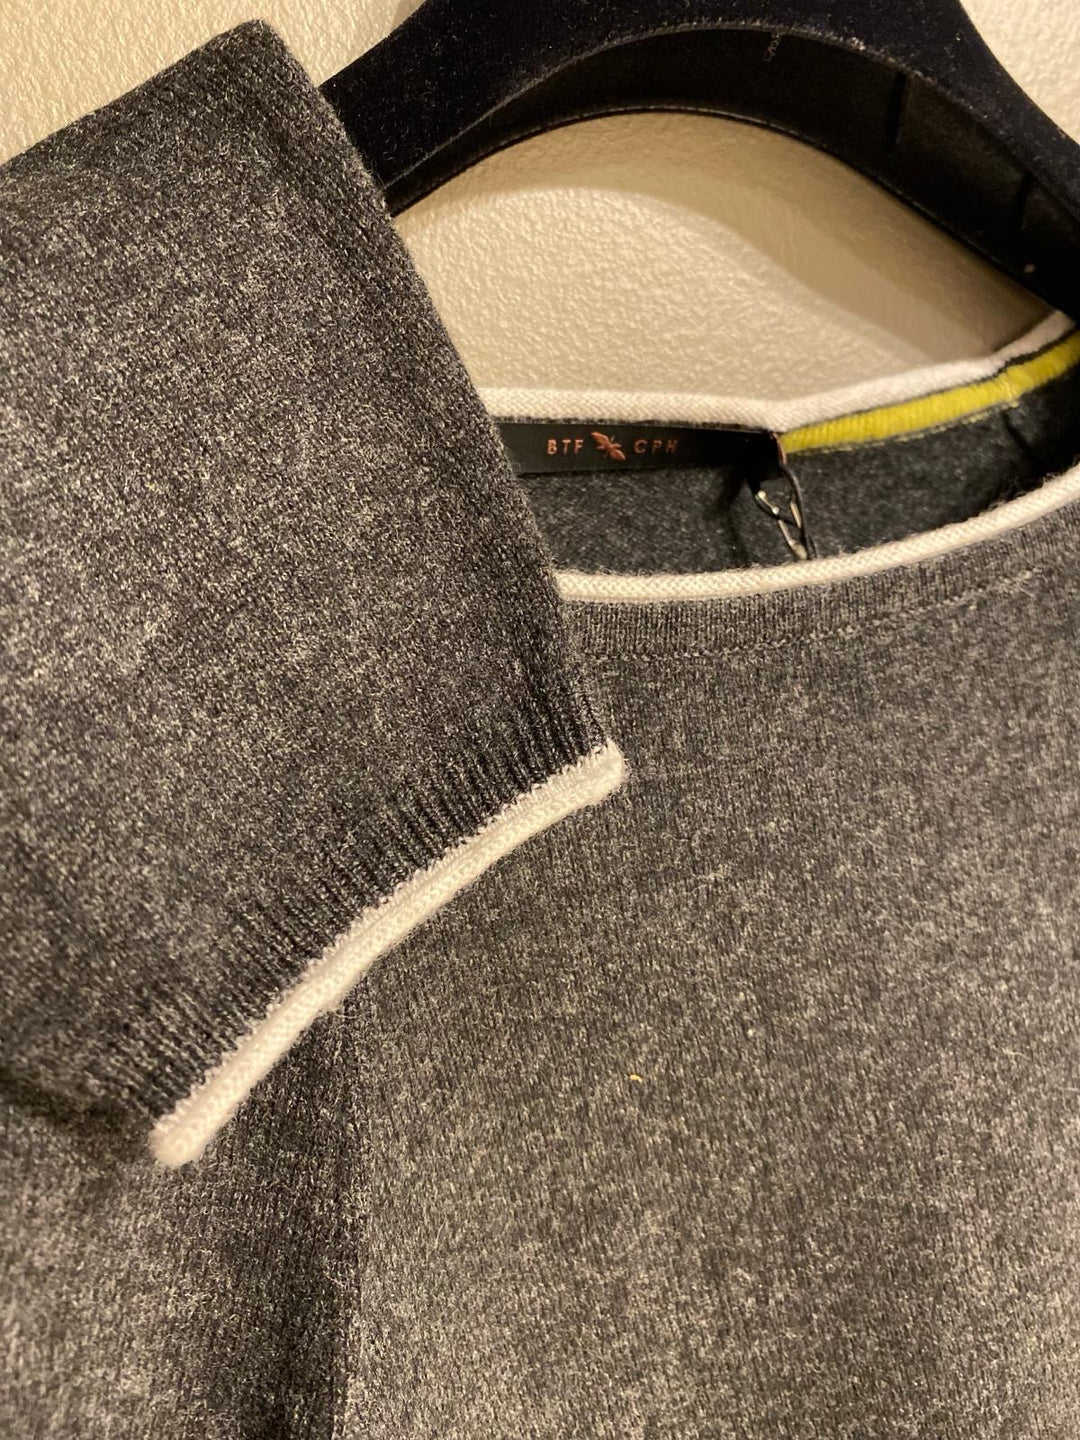 Cashmere pullover dark grey melange